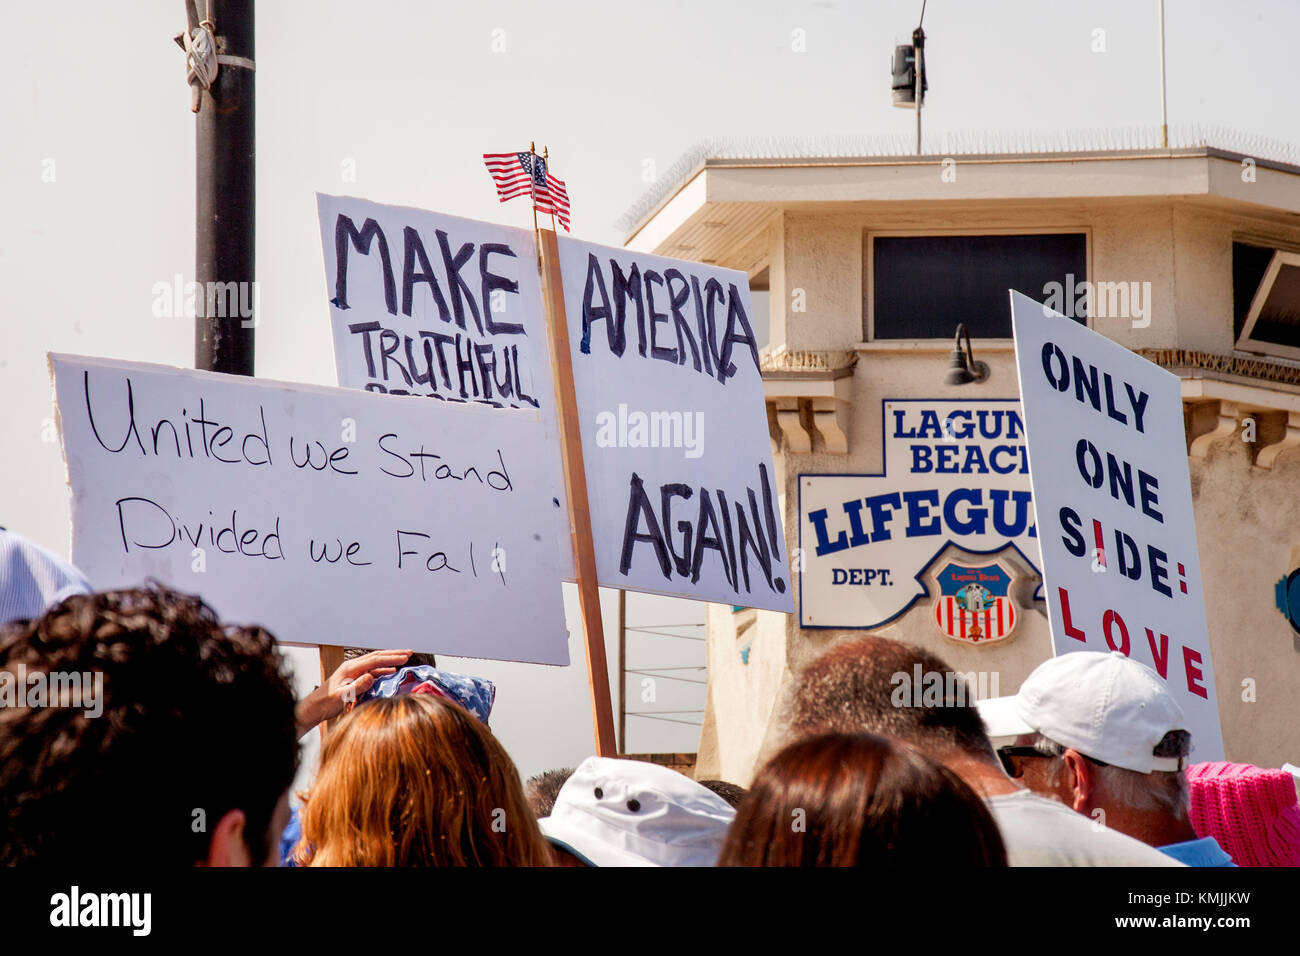 Contre-manifestants multiraciale exprime tolérance à une manifestation anti-immigration à Laguna Beach, ca. Remarque La célèbre lifeguard station. Banque D'Images